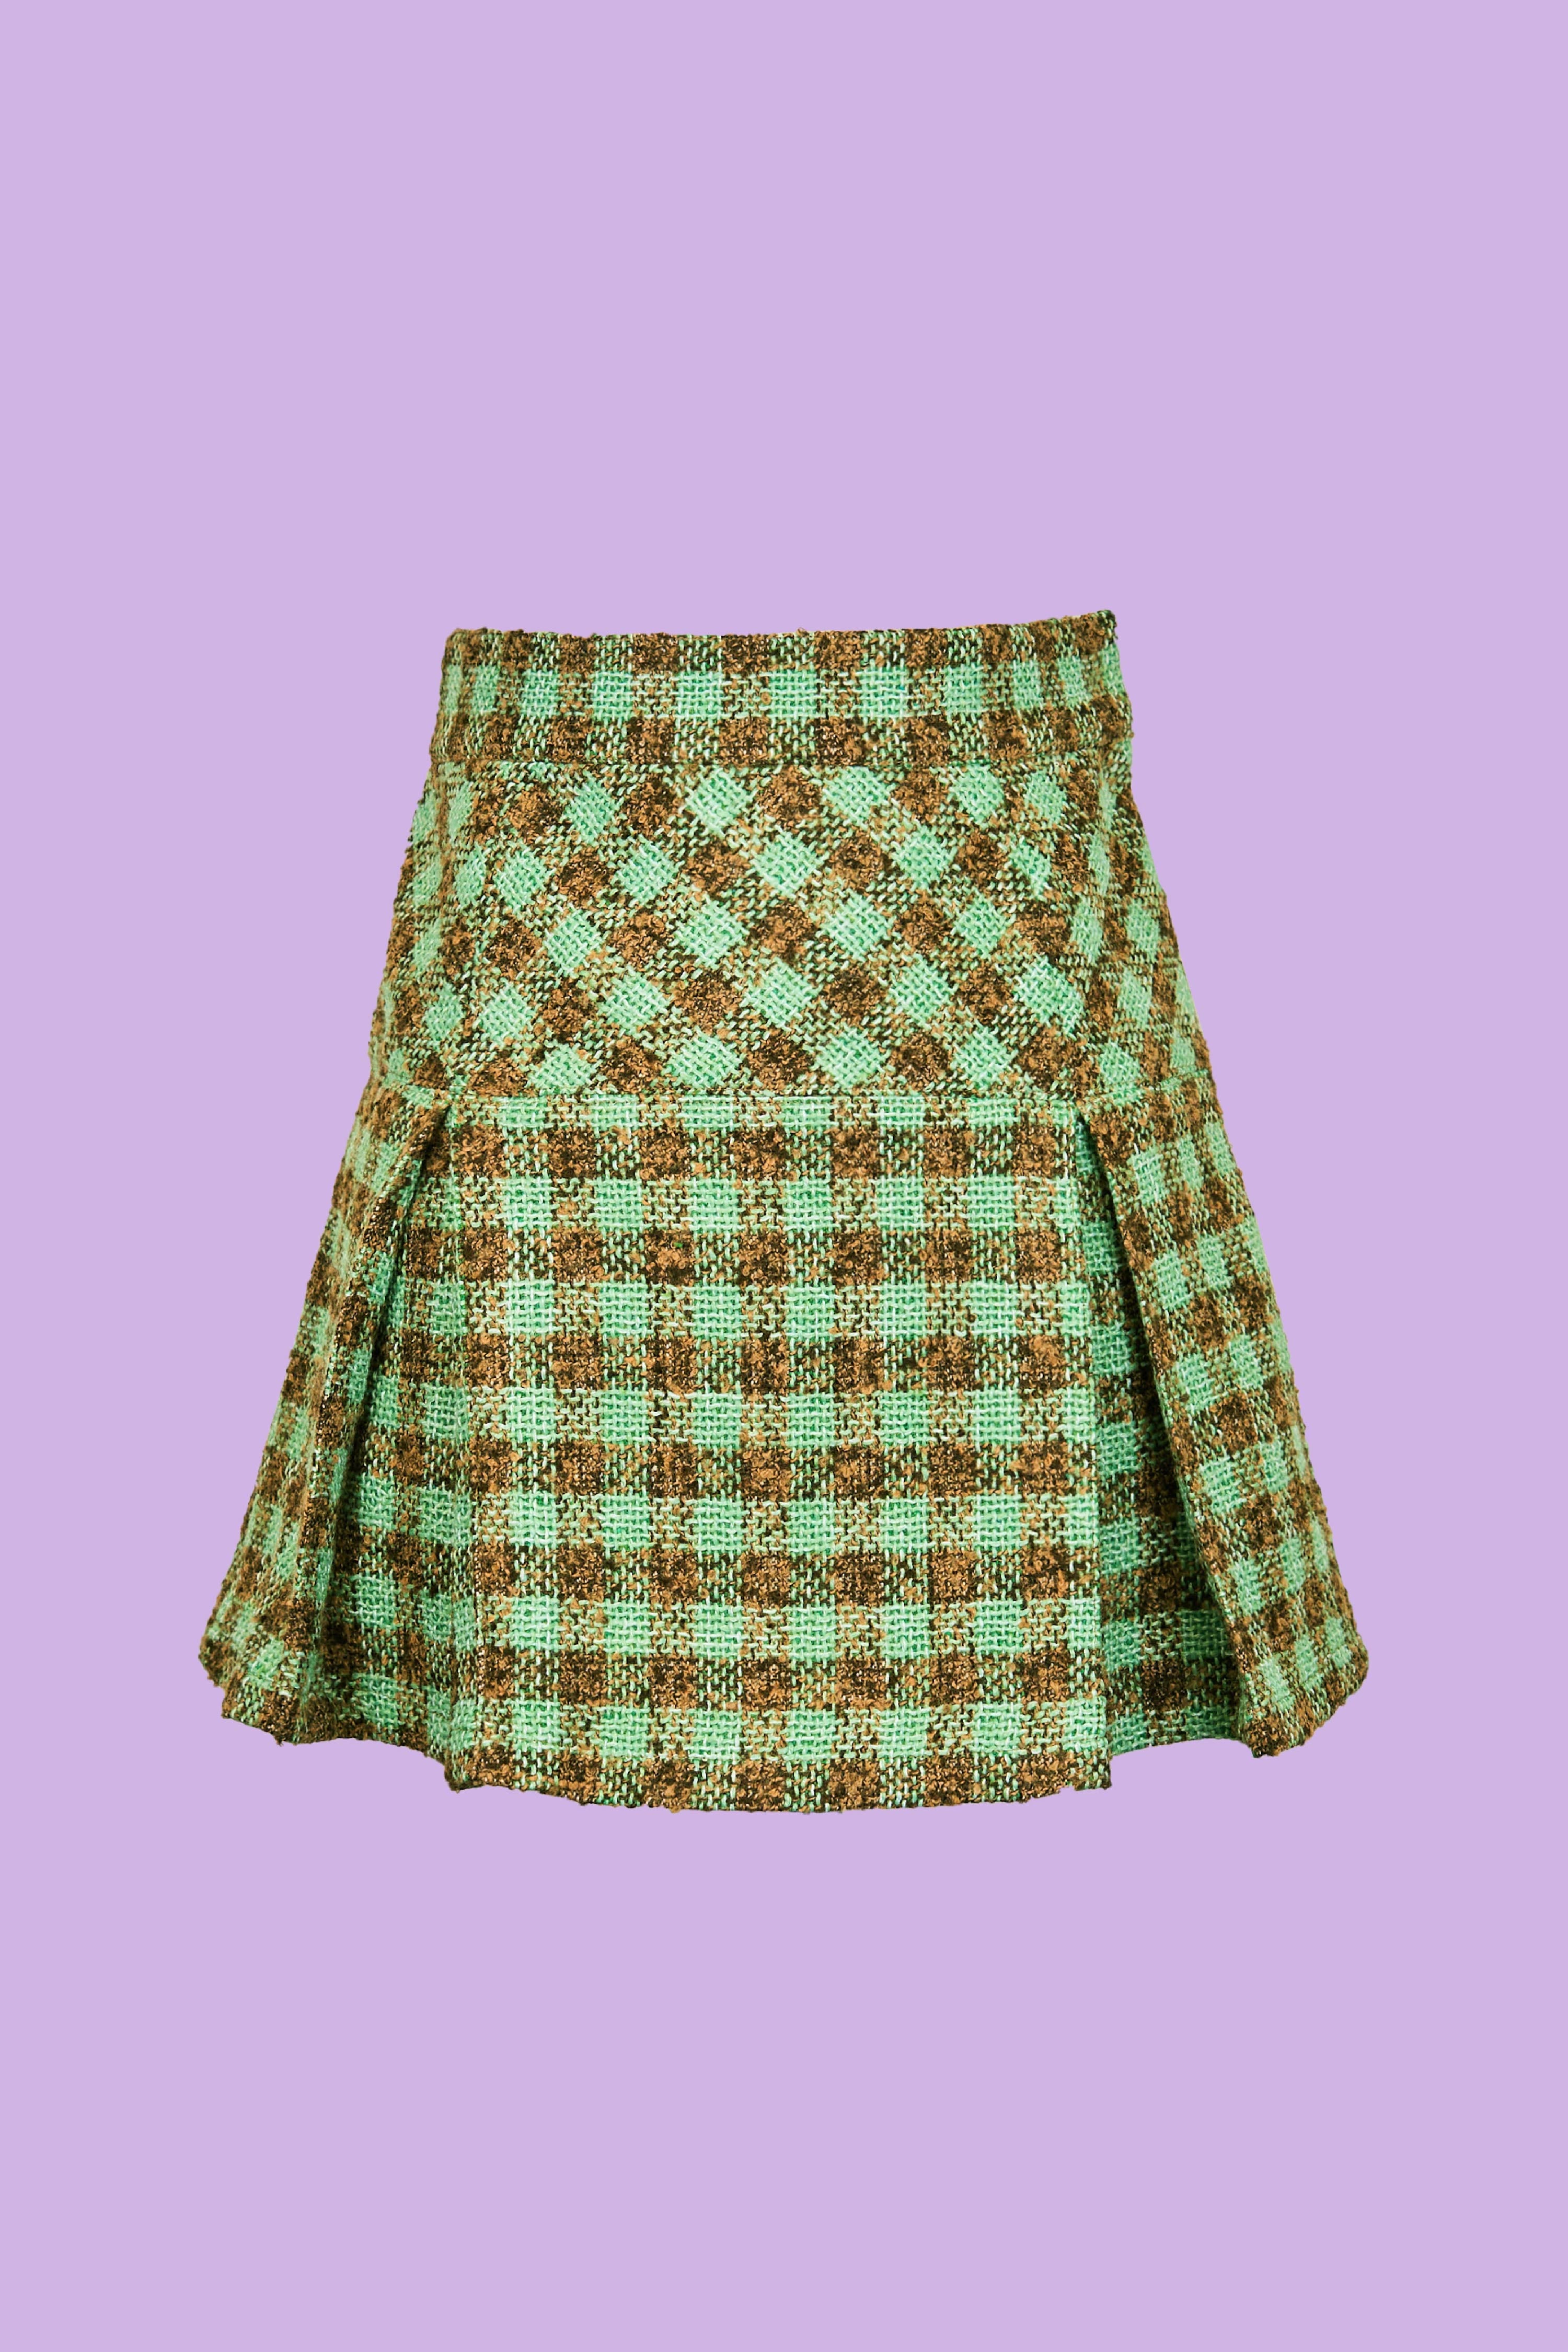 Chocomint skirt 【Seiney BLONDE】SeineyBLONDE - ミニスカート